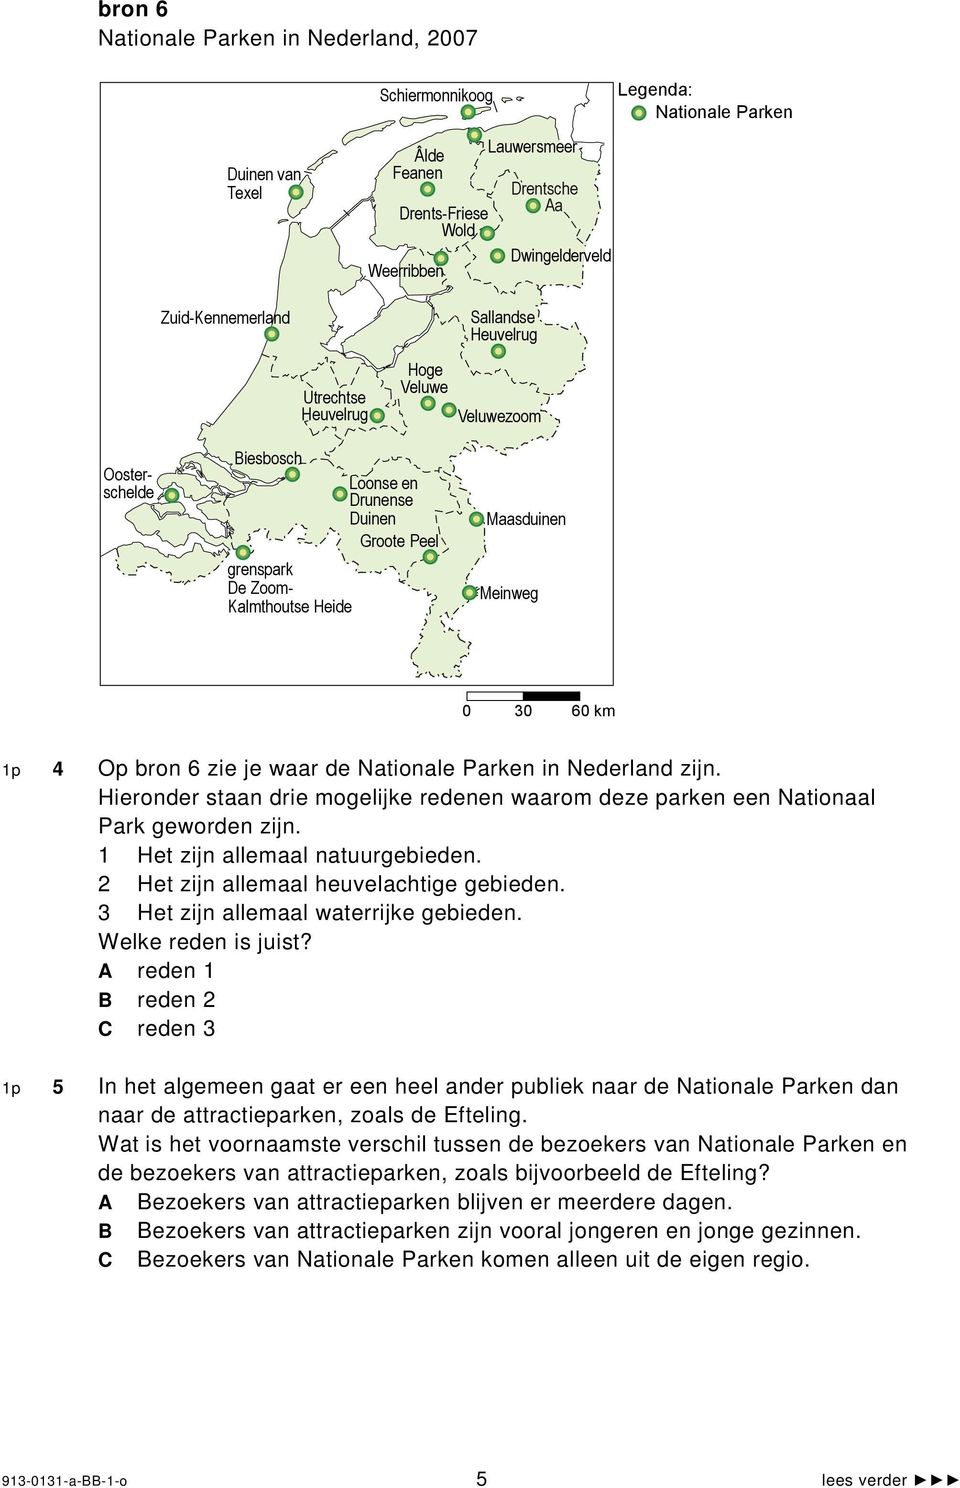 1p 4 Op bron 6 zie je waar de Nationale Parken in Nederland zijn. Hieronder staan drie mogelijke redenen waarom deze parken een Nationaal Park geworden zijn. 1 Het zijn allemaal natuurgebieden.